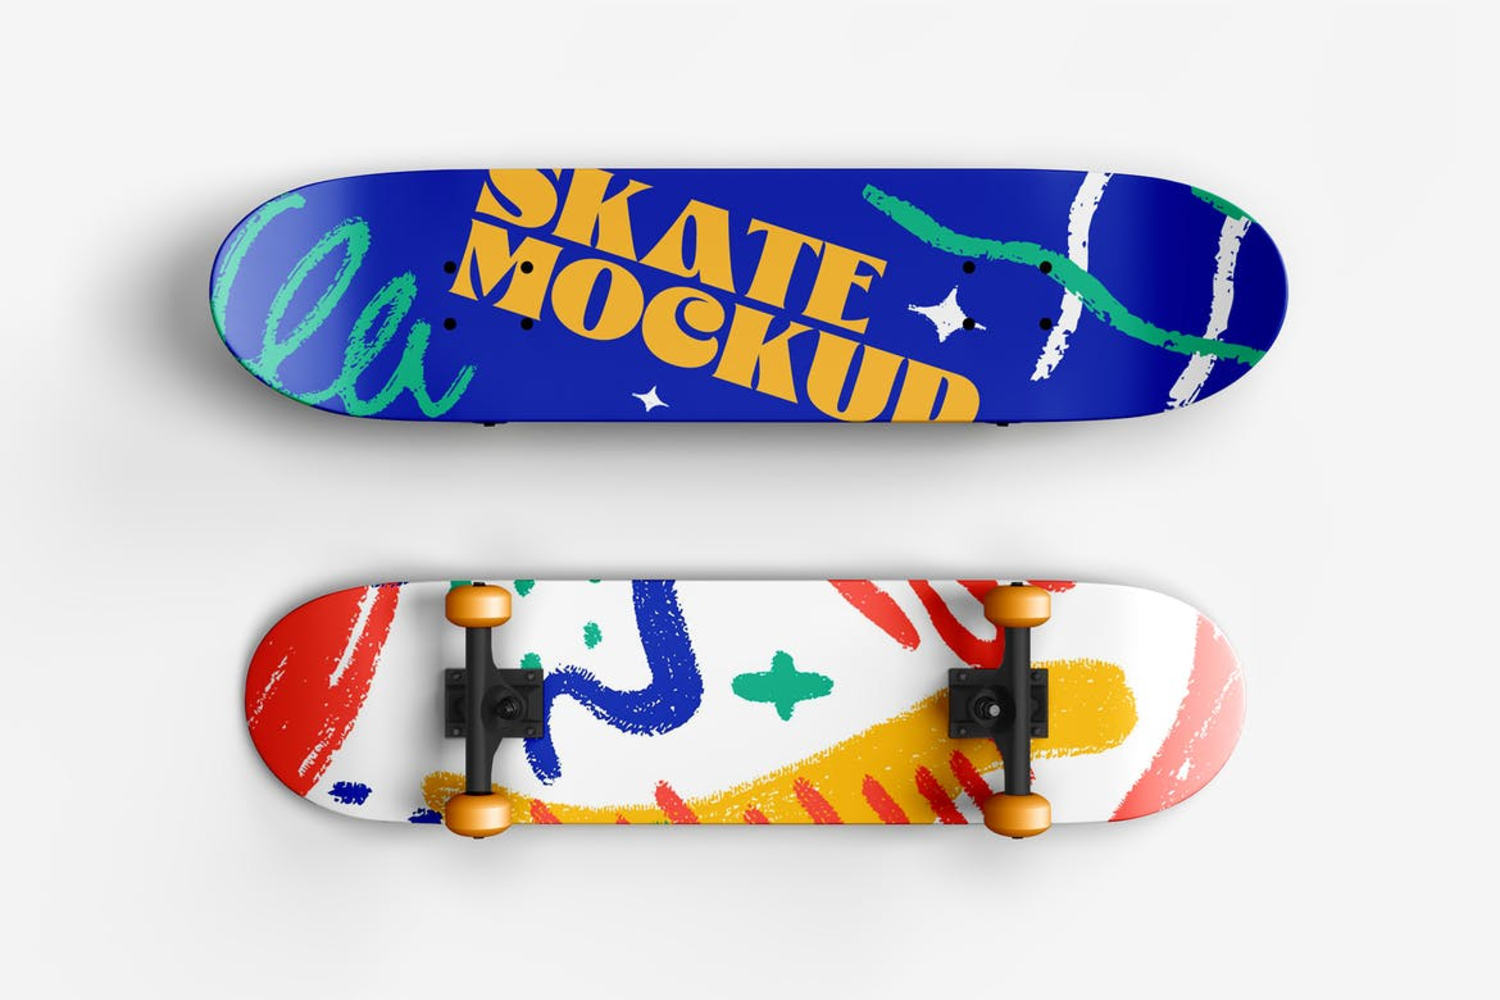 1791 8款潮流街头滑板设计PS样机素材(psd) Skateboard Mockup